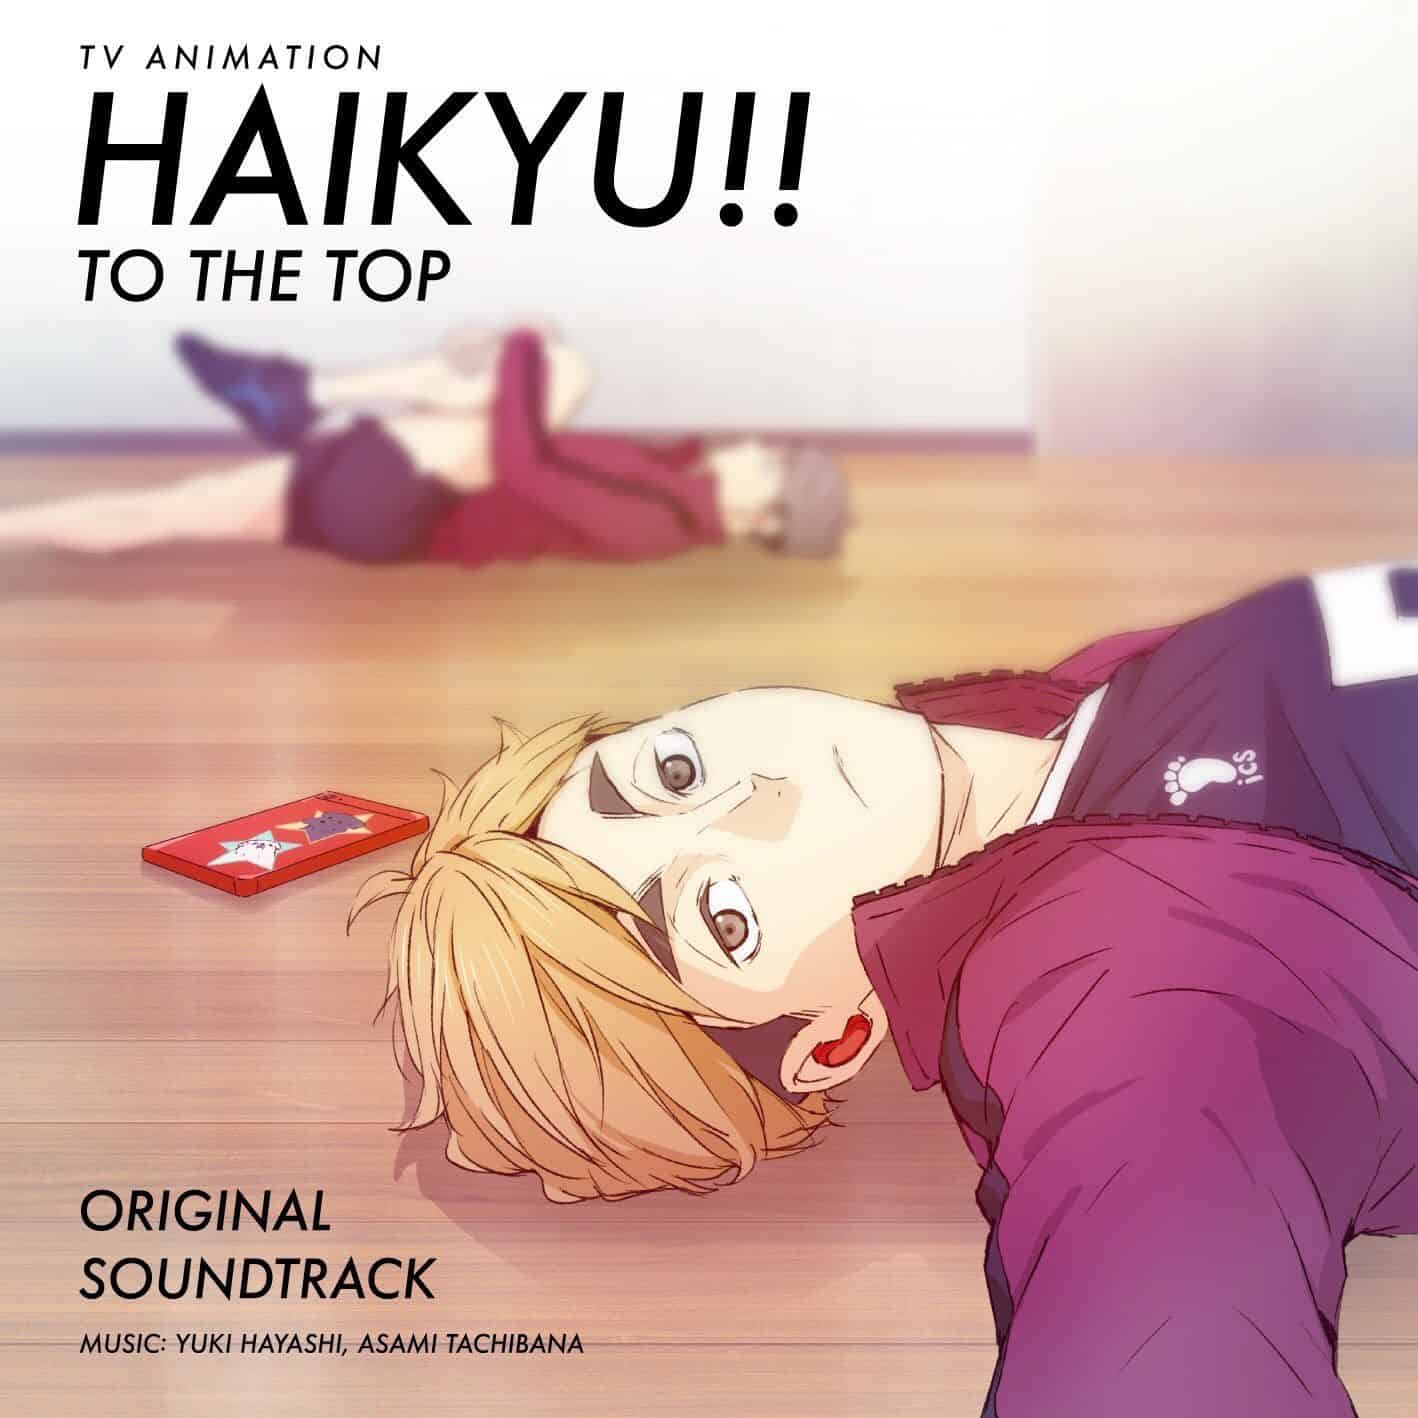 Haikyu!! Soundtrack